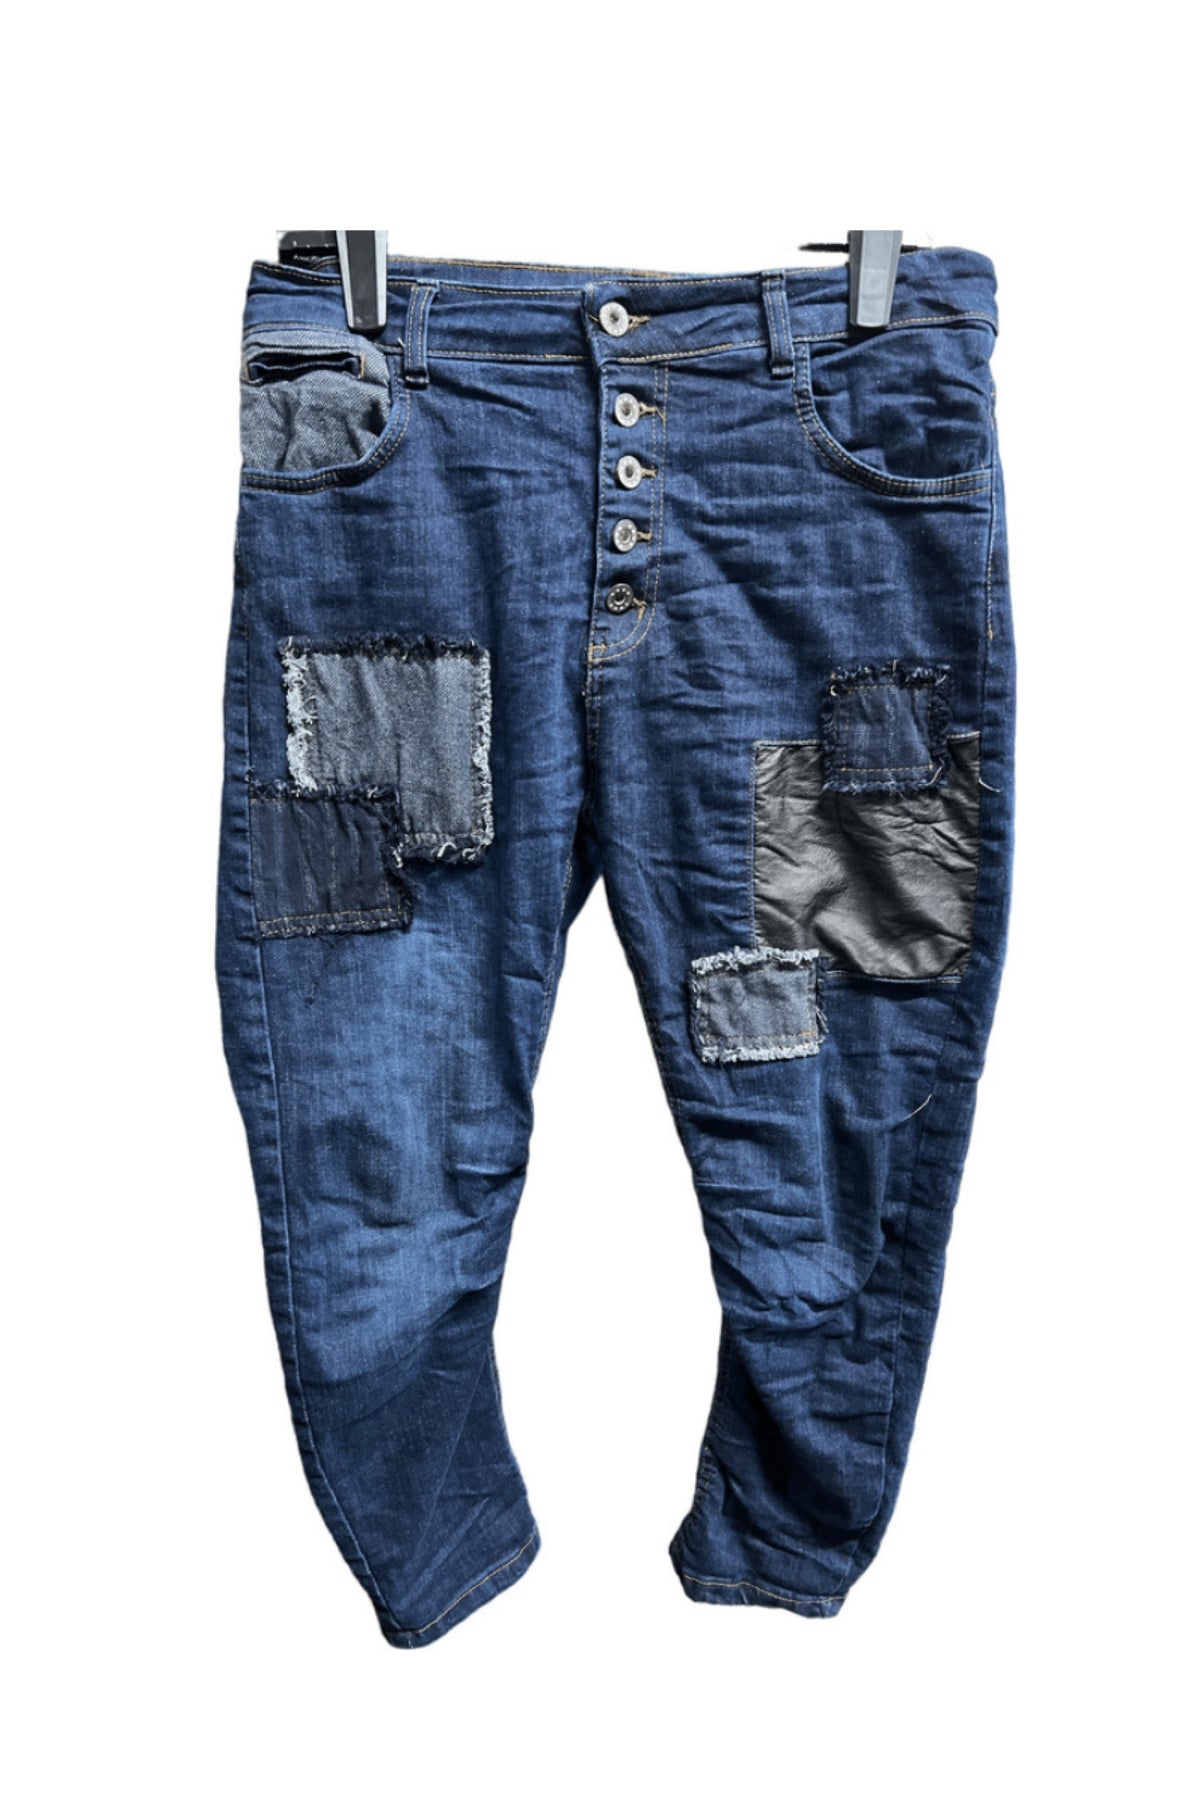 Umbria Patch Denim Jeans